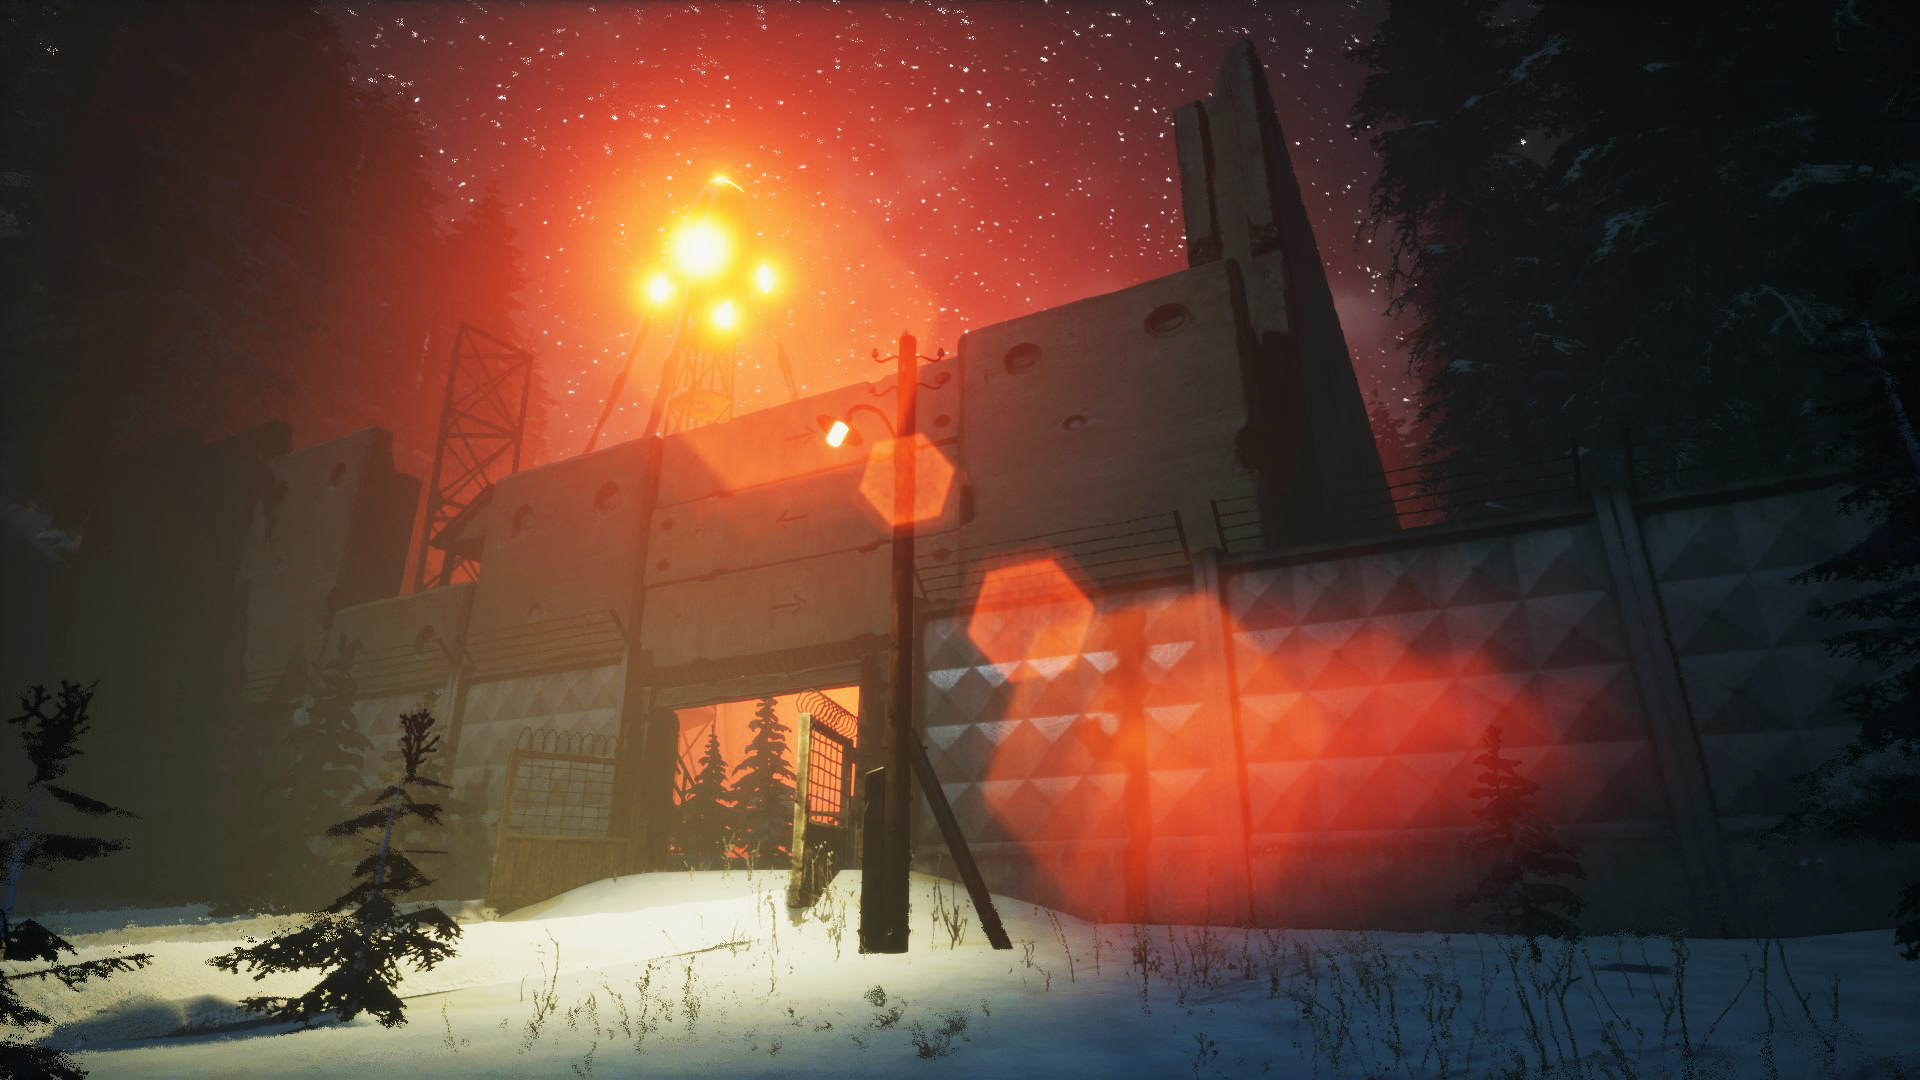 Conheça Expedition Zero jogo de terror e sobrevivência que chega esta  semana ao Steam